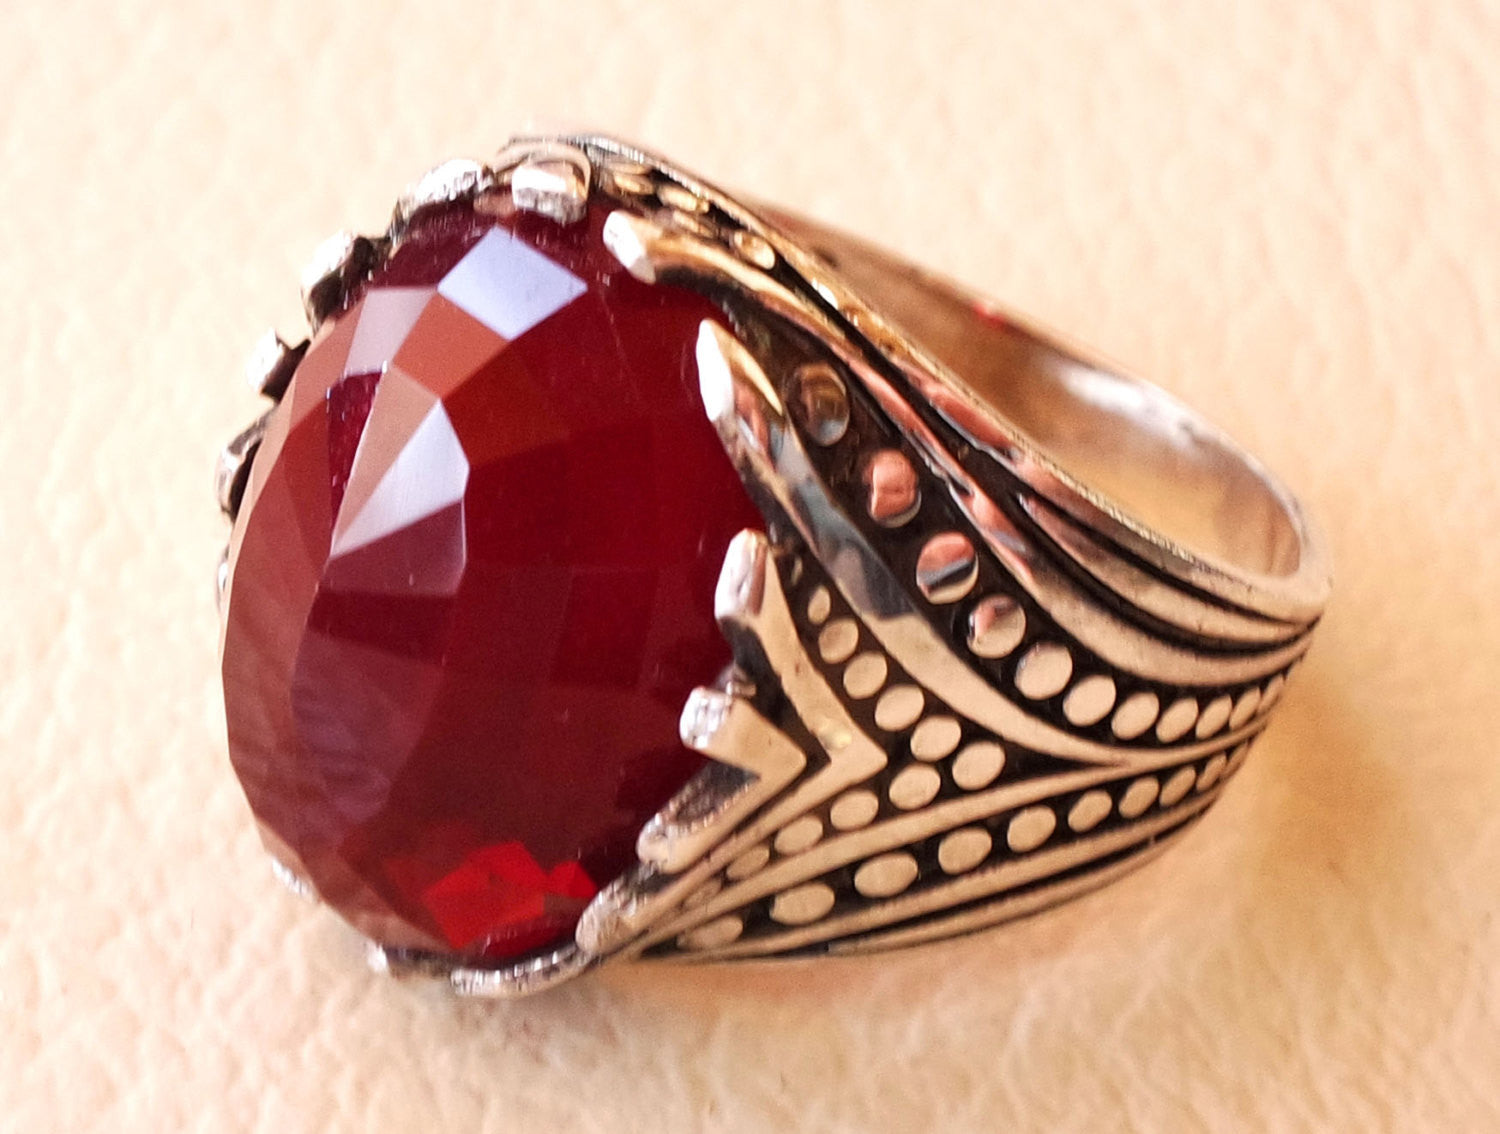 color rojo rubí facetas cabochon Stone hombre anillo de plata esterlina 925 todos los tamaños de alta calidad joyería otomana de Oriente medio antiguo estilo